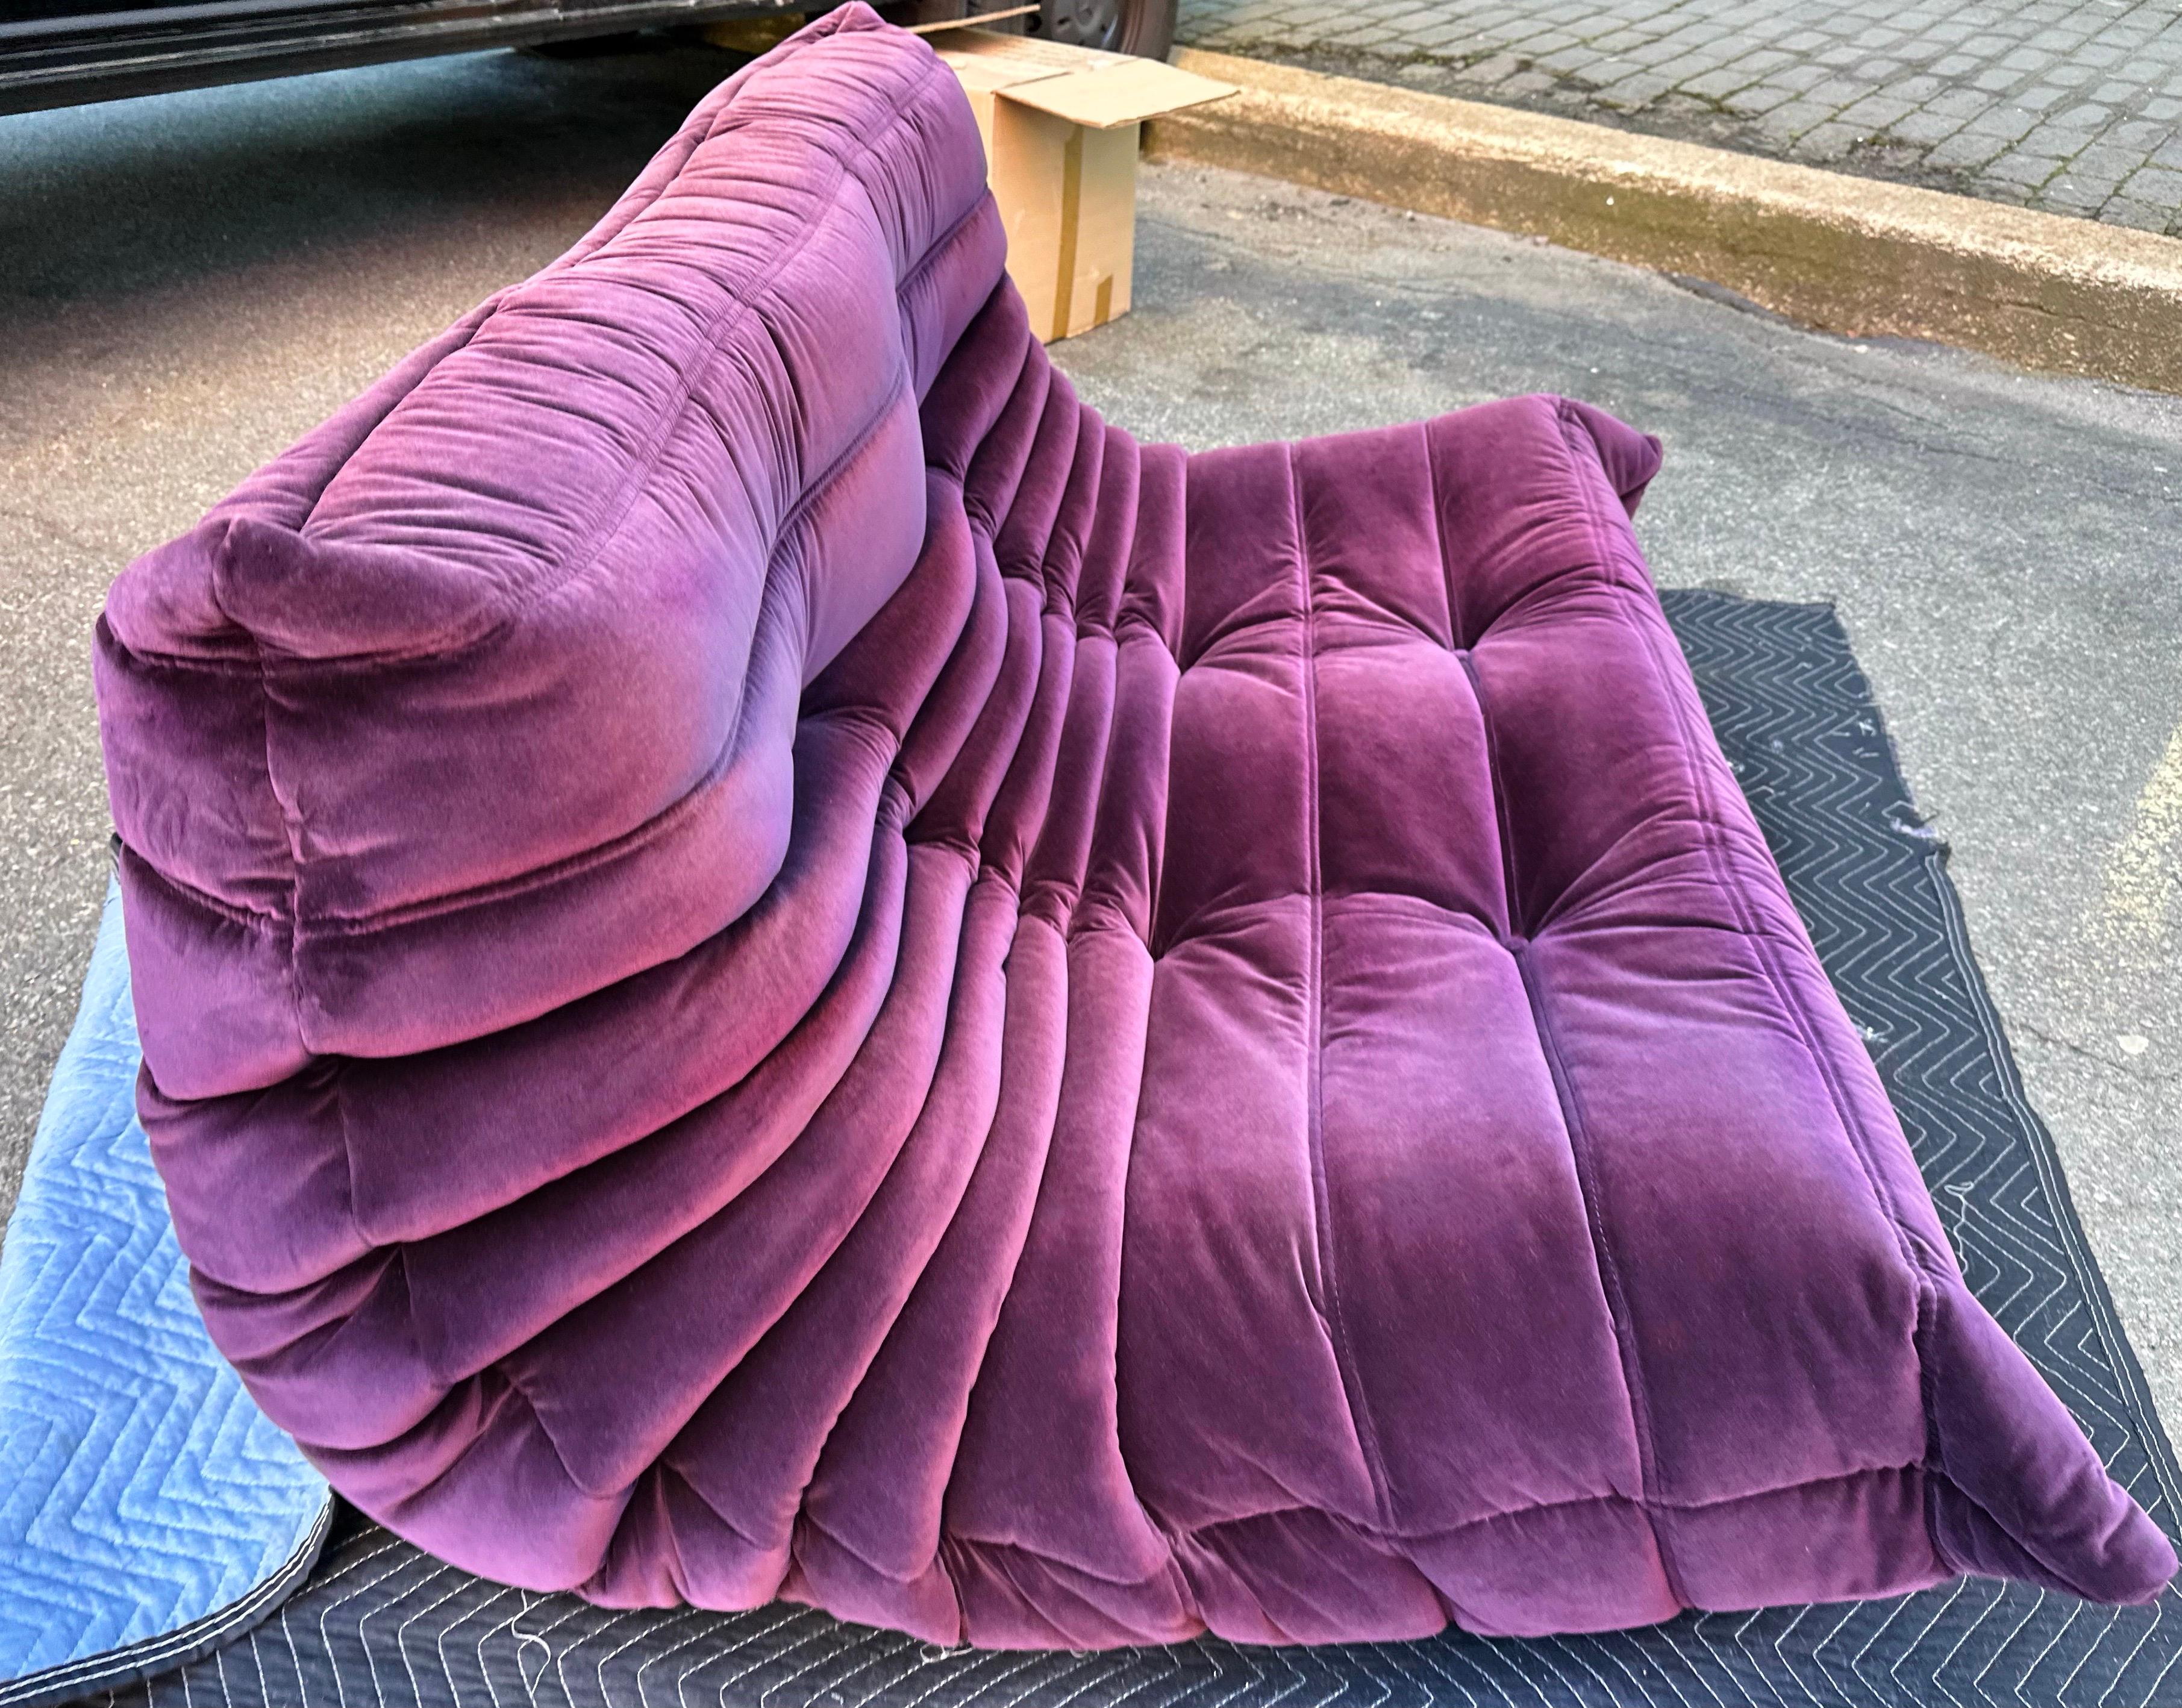 Textile Michel Ducaroy for Ligne Roset Togo Loveseat Sofa, Herald Cassis Purple Velvet 